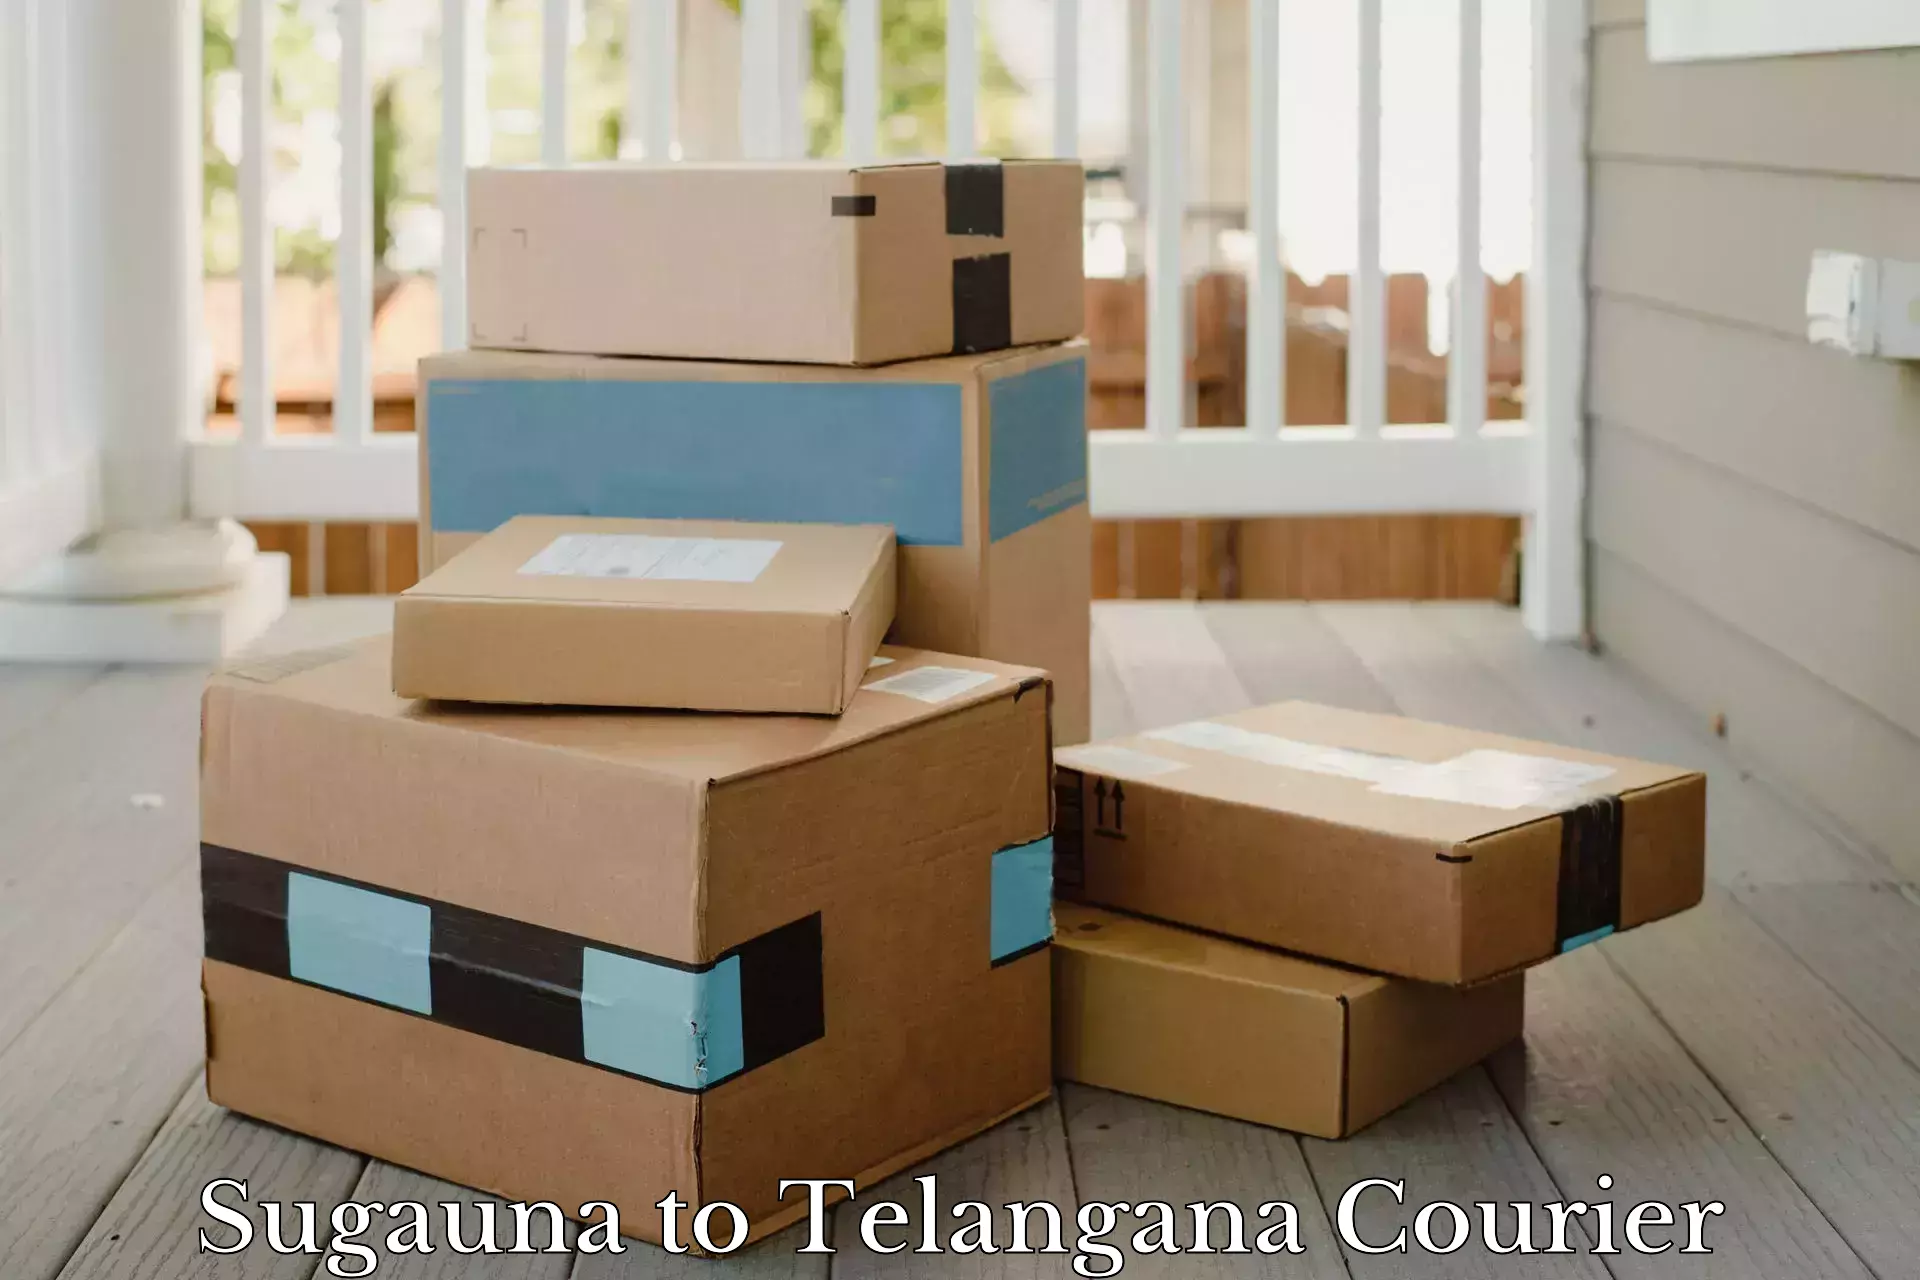 High-speed parcel service Sugauna to Medchal